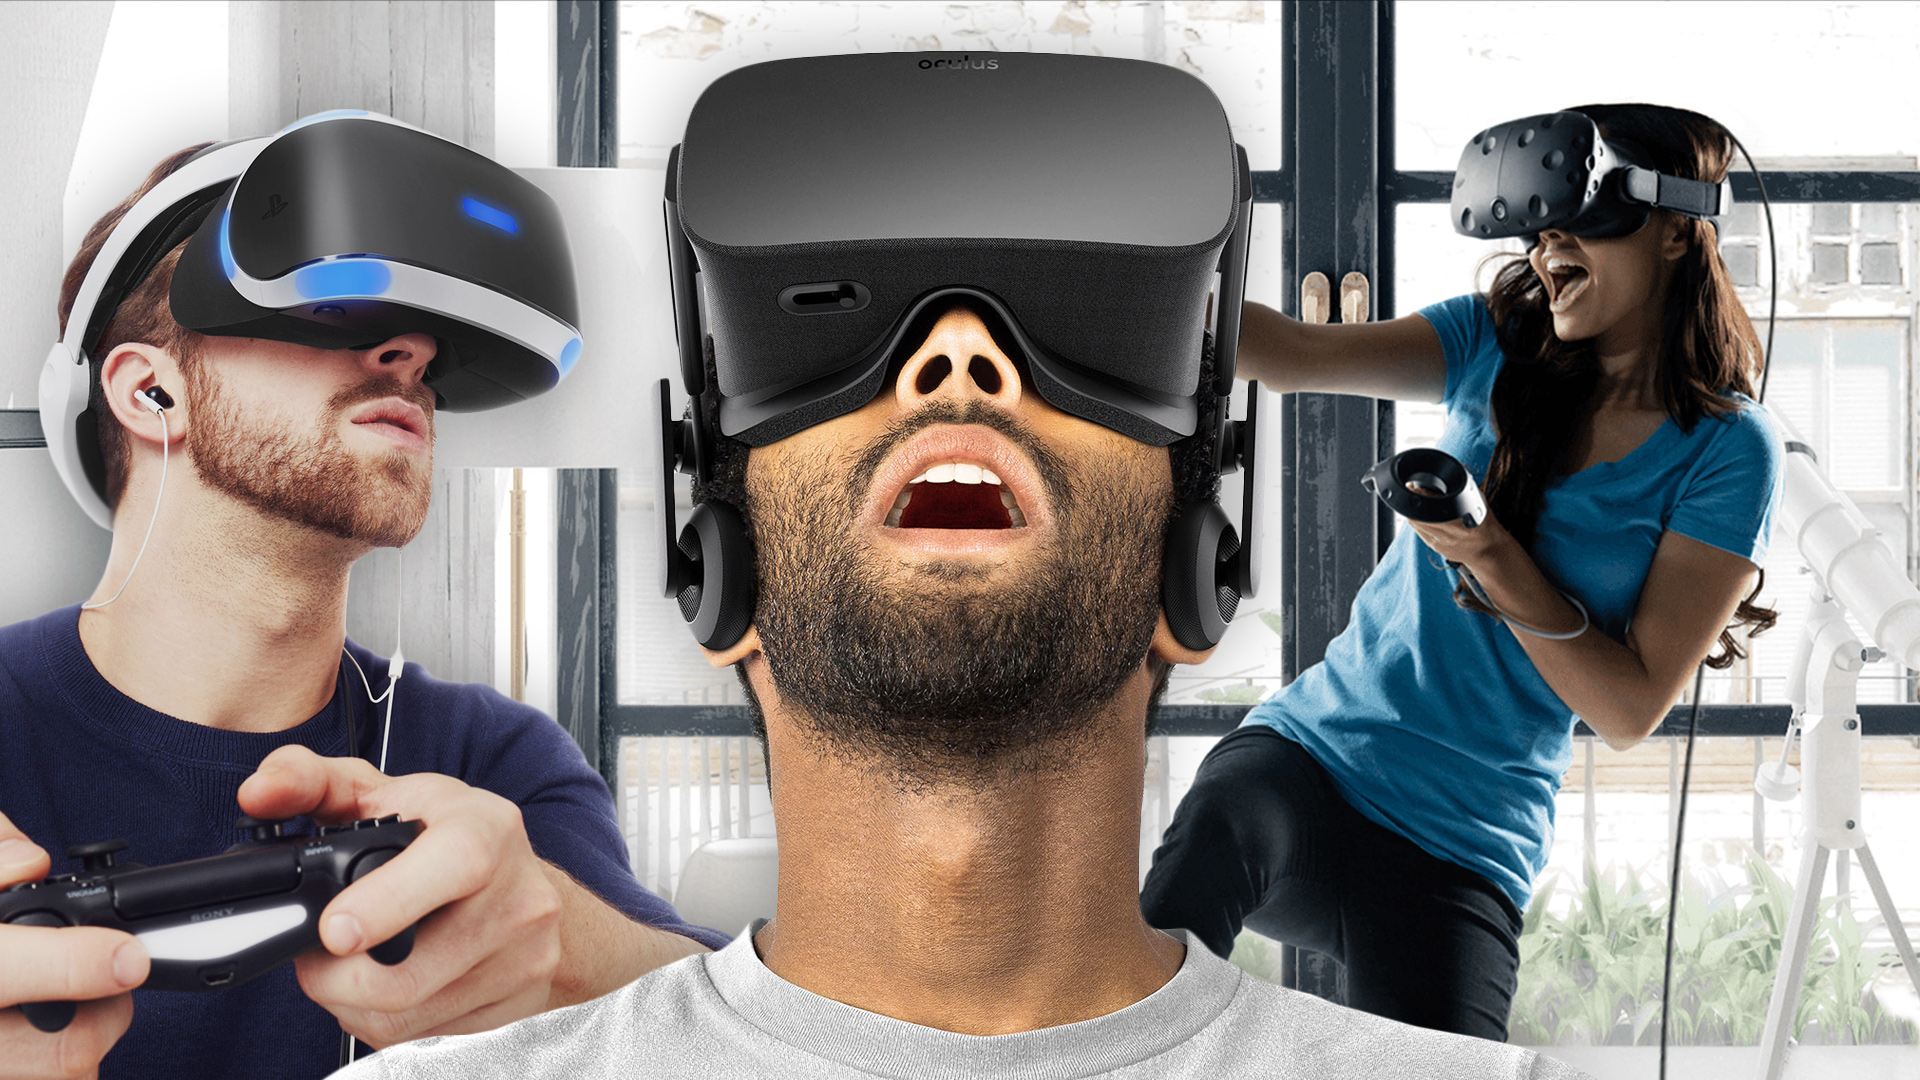 Compilations vr. HTC Vive Steam. VR Headset 90s. Погружение в виртуальную реальность. Аттракцион виртуальной реальности.